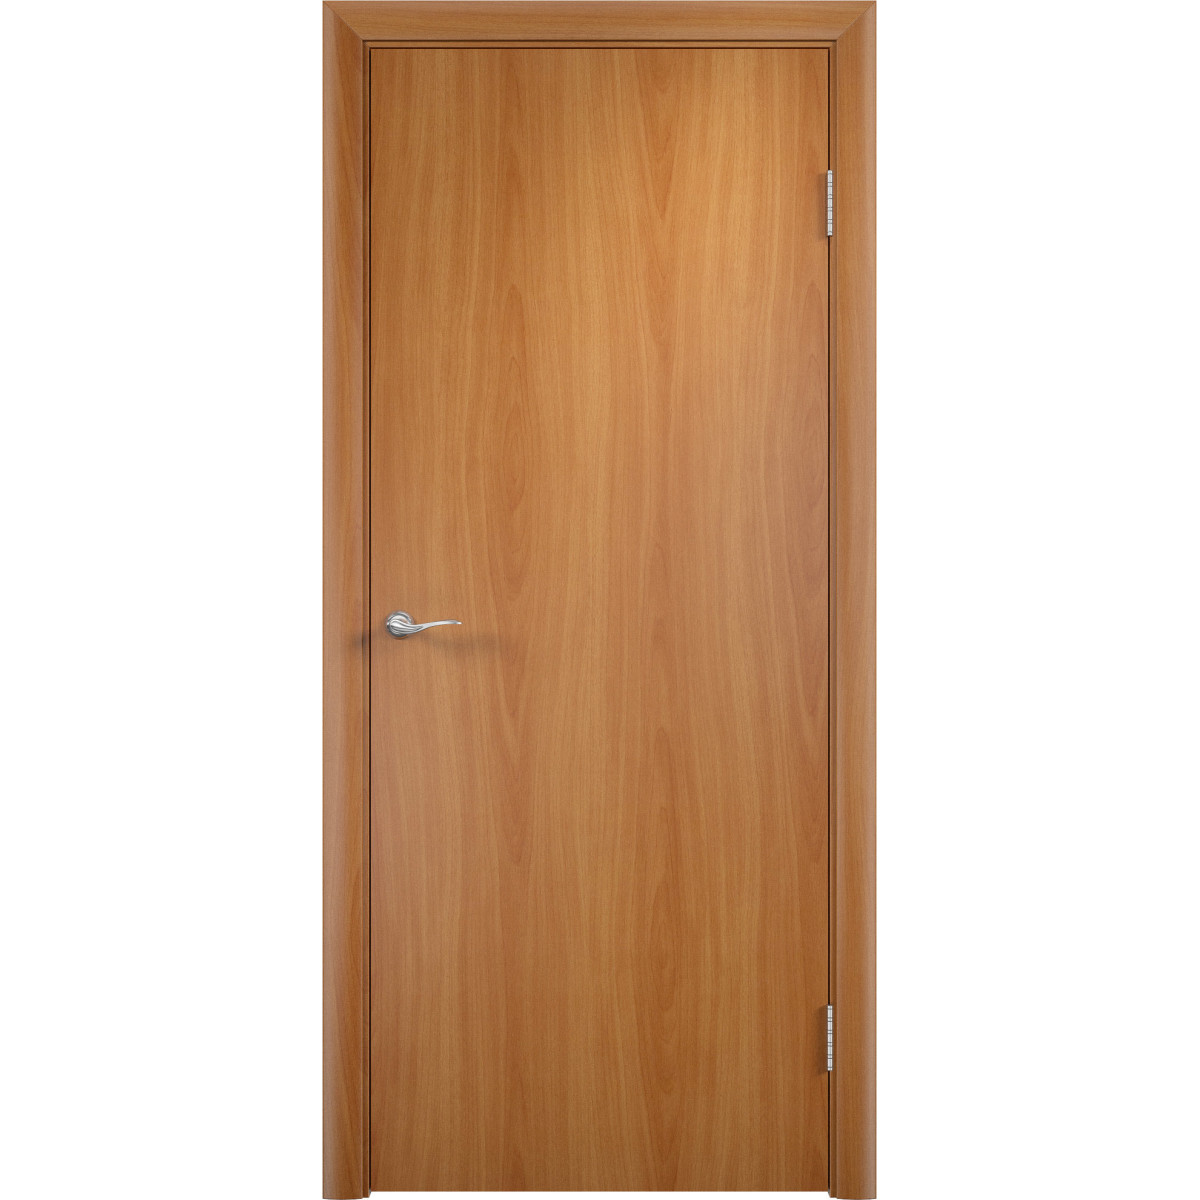 Дверь межкомнатная глухая 60x200 см, ламинация, цвет миланский орех